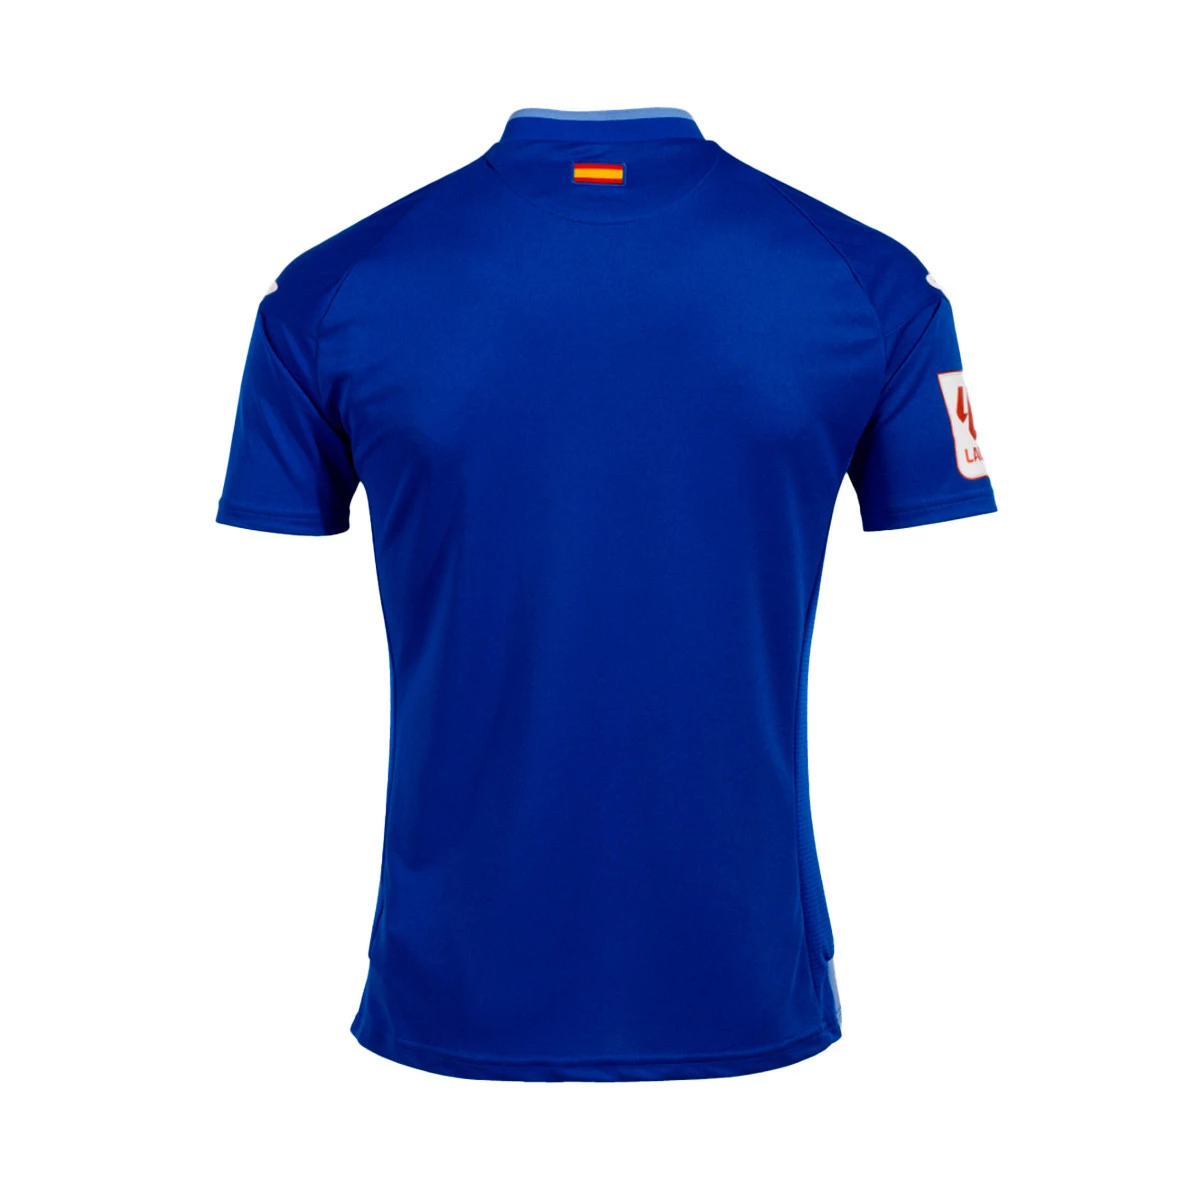 Camiseta Joma City - Tienda online de material deportivo y